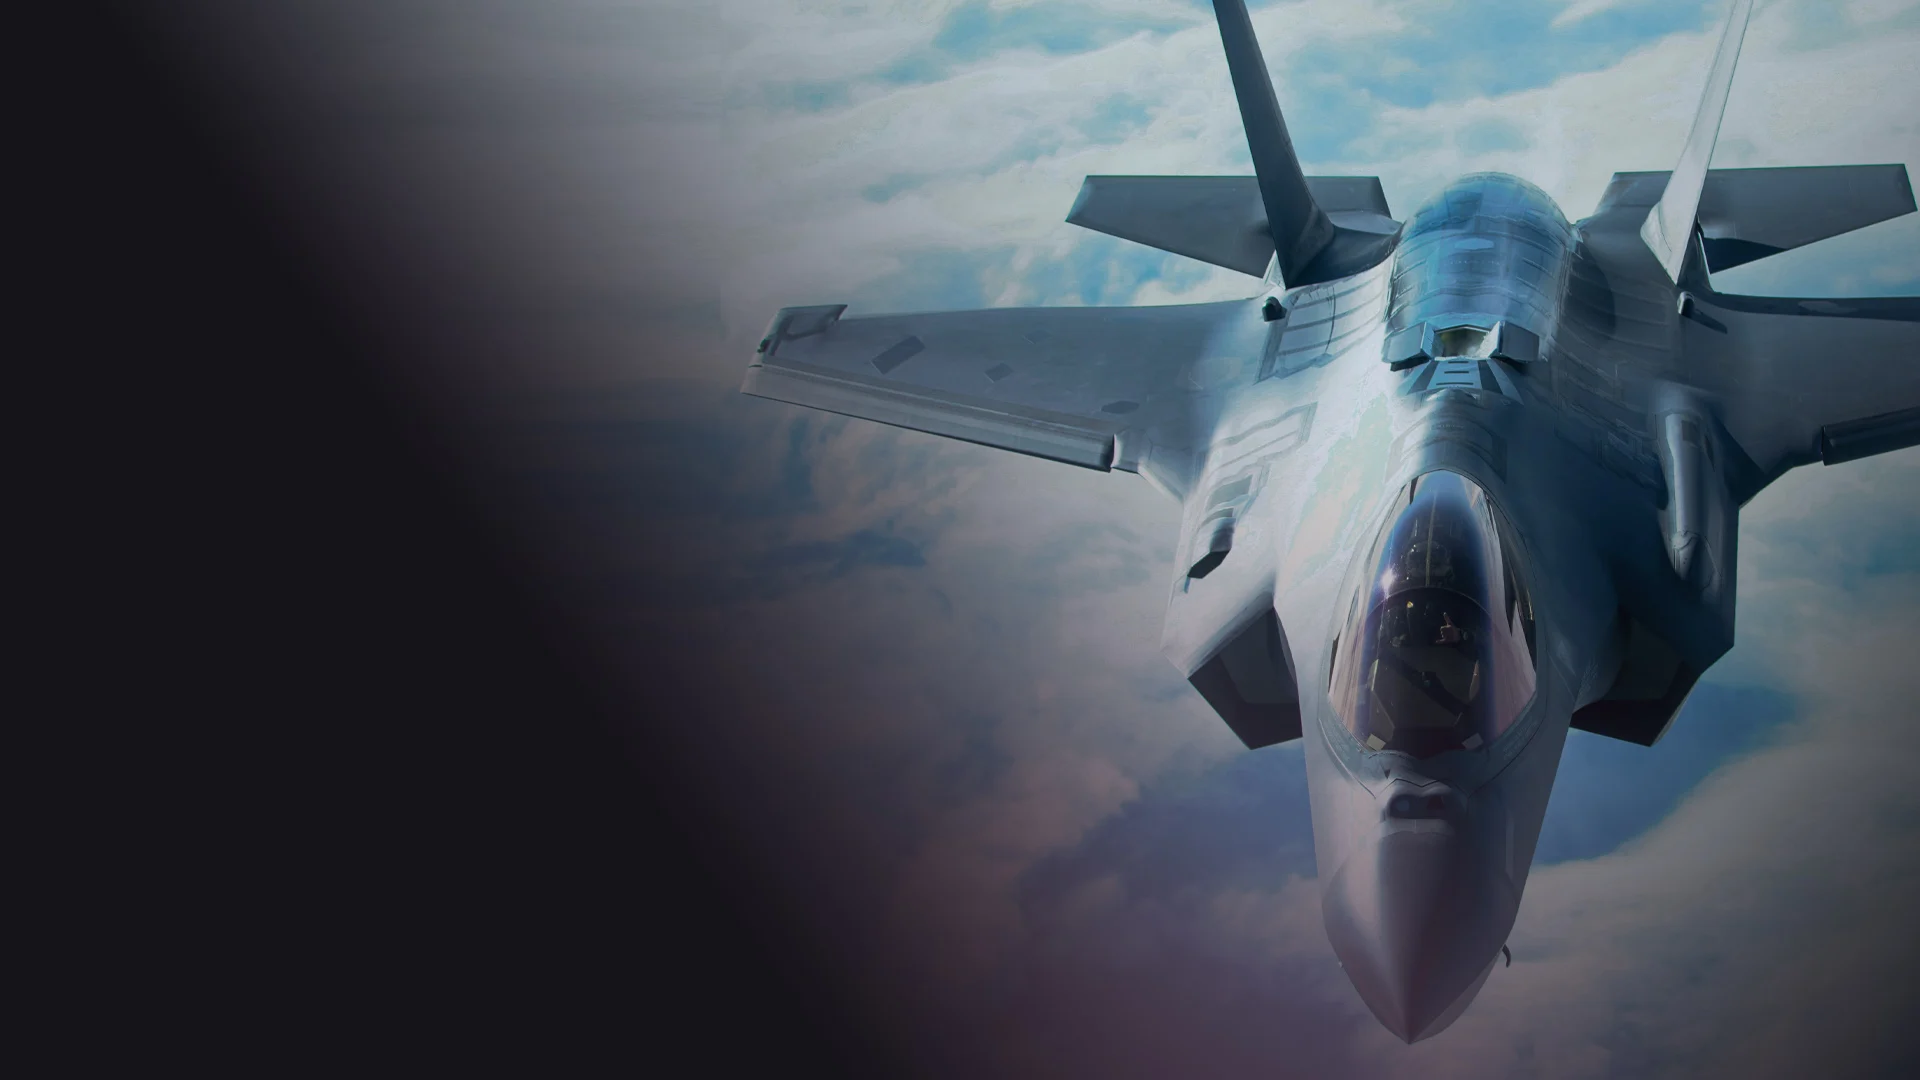 ΗΠΑ για F-35 στην Τουρκία: «Συνεχίζουμε να έχουμε προβλήματα με την πώληση των μαχητικών στην Τουρκία λόγω των S-400» λέει ο Λευκός Οίκος